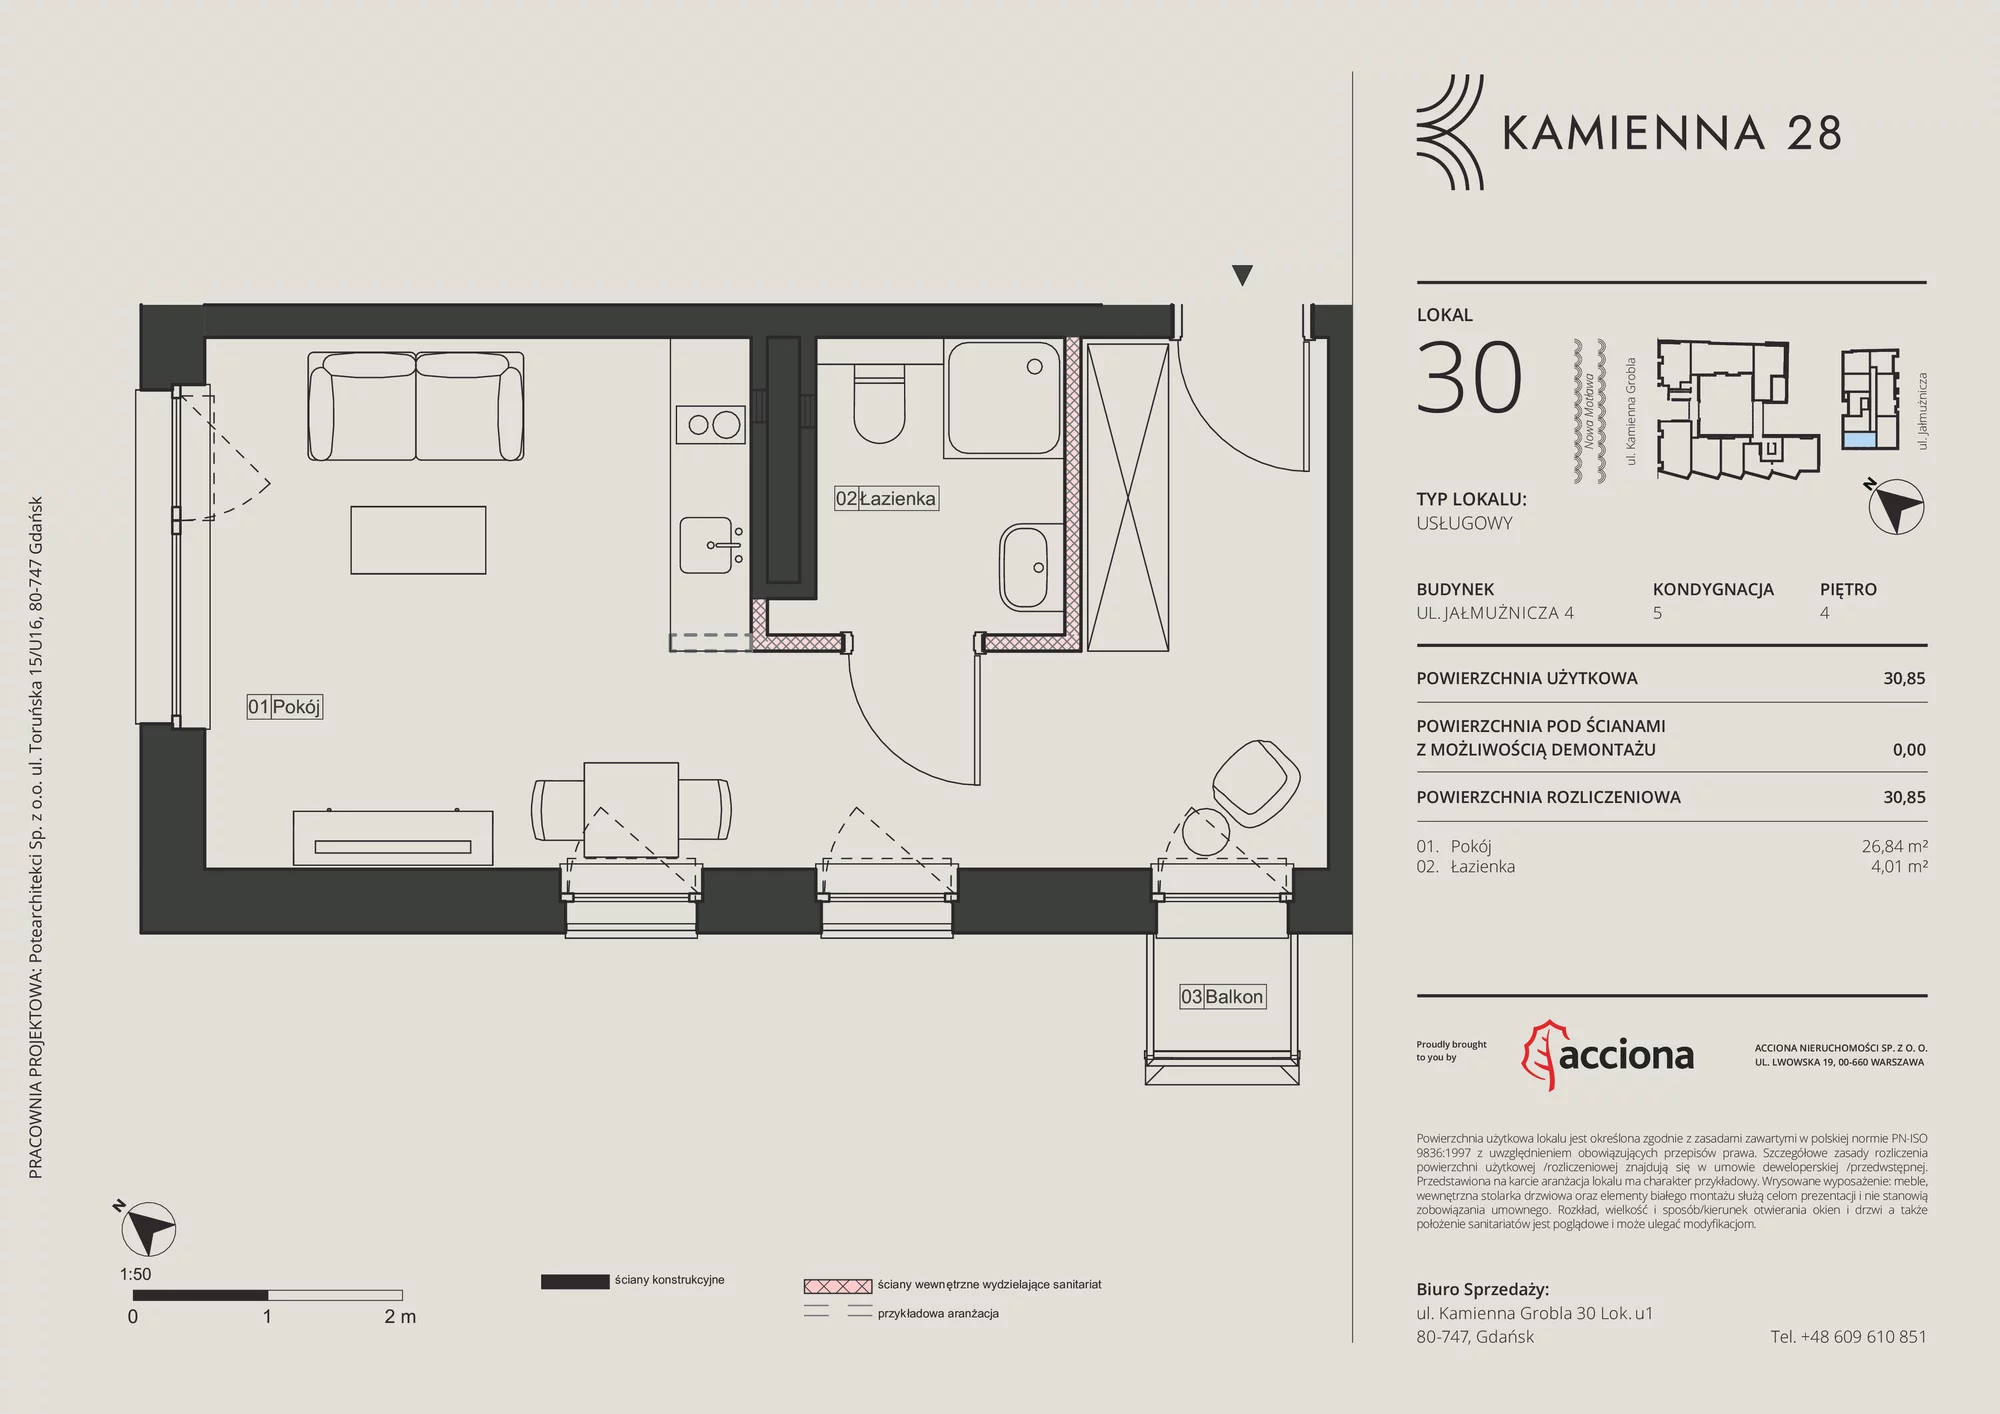 Apartament inwestycyjny 30,85 m², piętro 4, oferta nr 4.30, Kamienna 28 - apartamenty inwestycyjne, Gdańsk, Śródmieście, Dolne Miasto, ul. Jałmużnicza 4